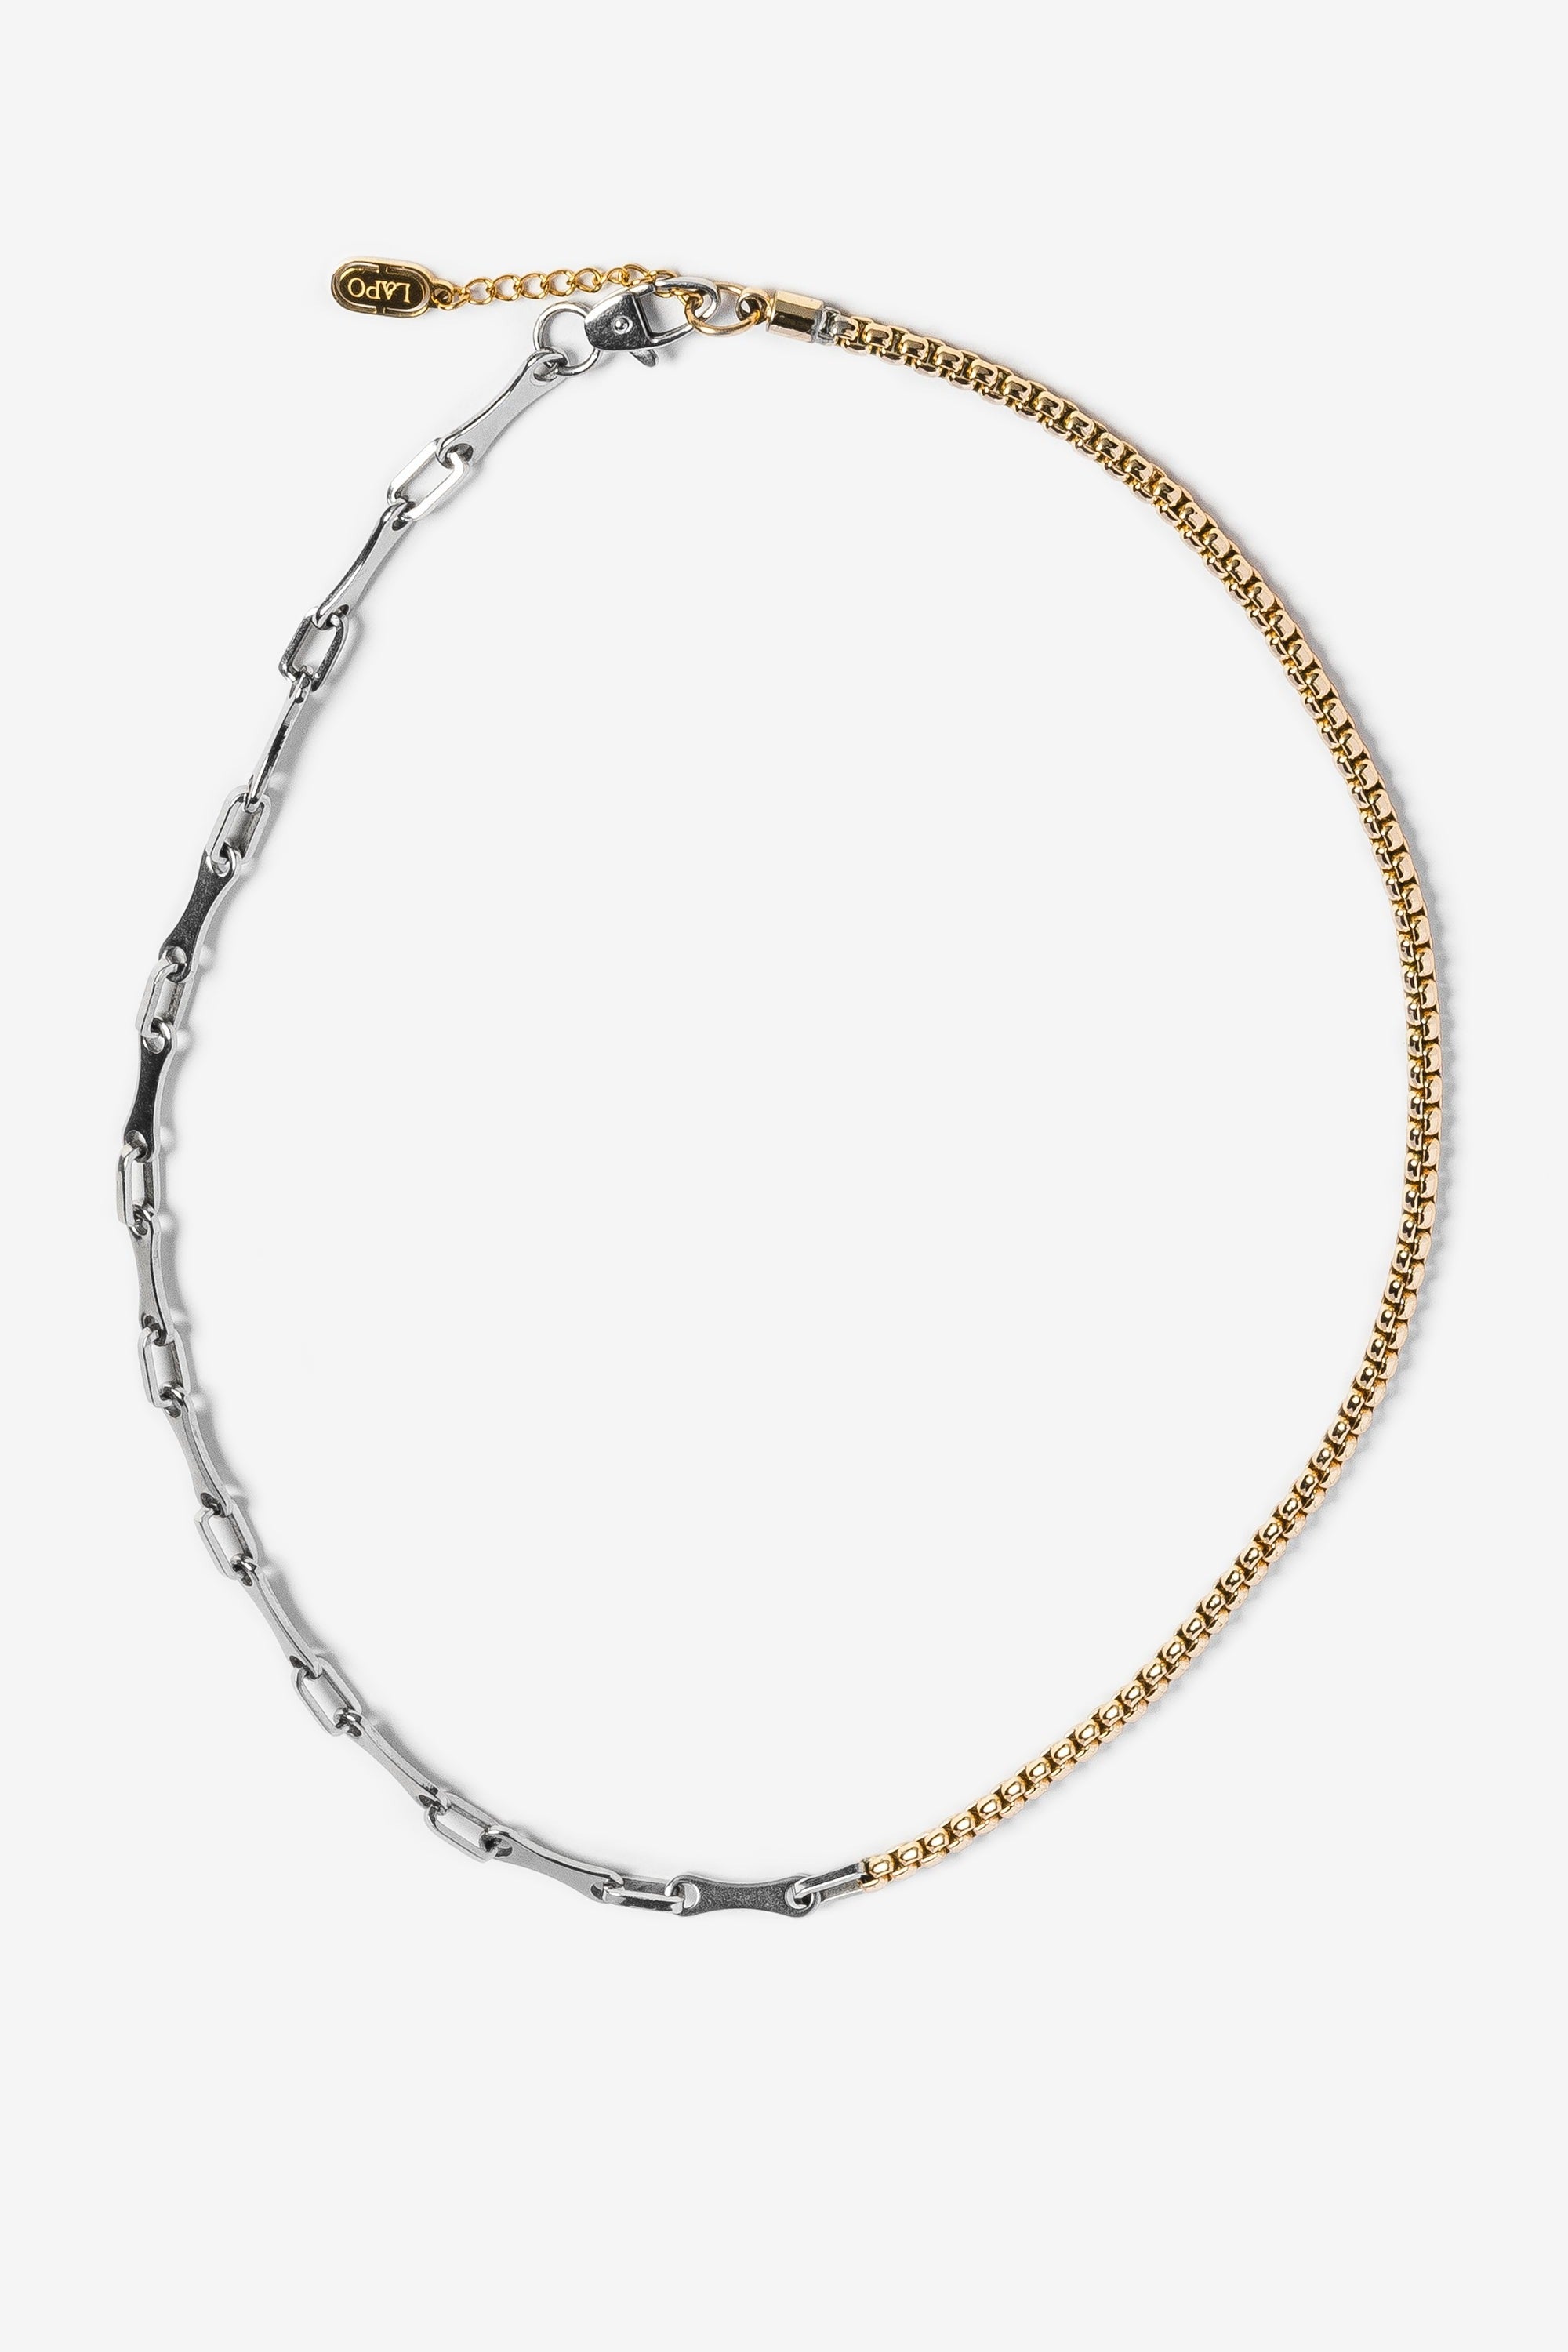 Zara Silver & Gold Necklace